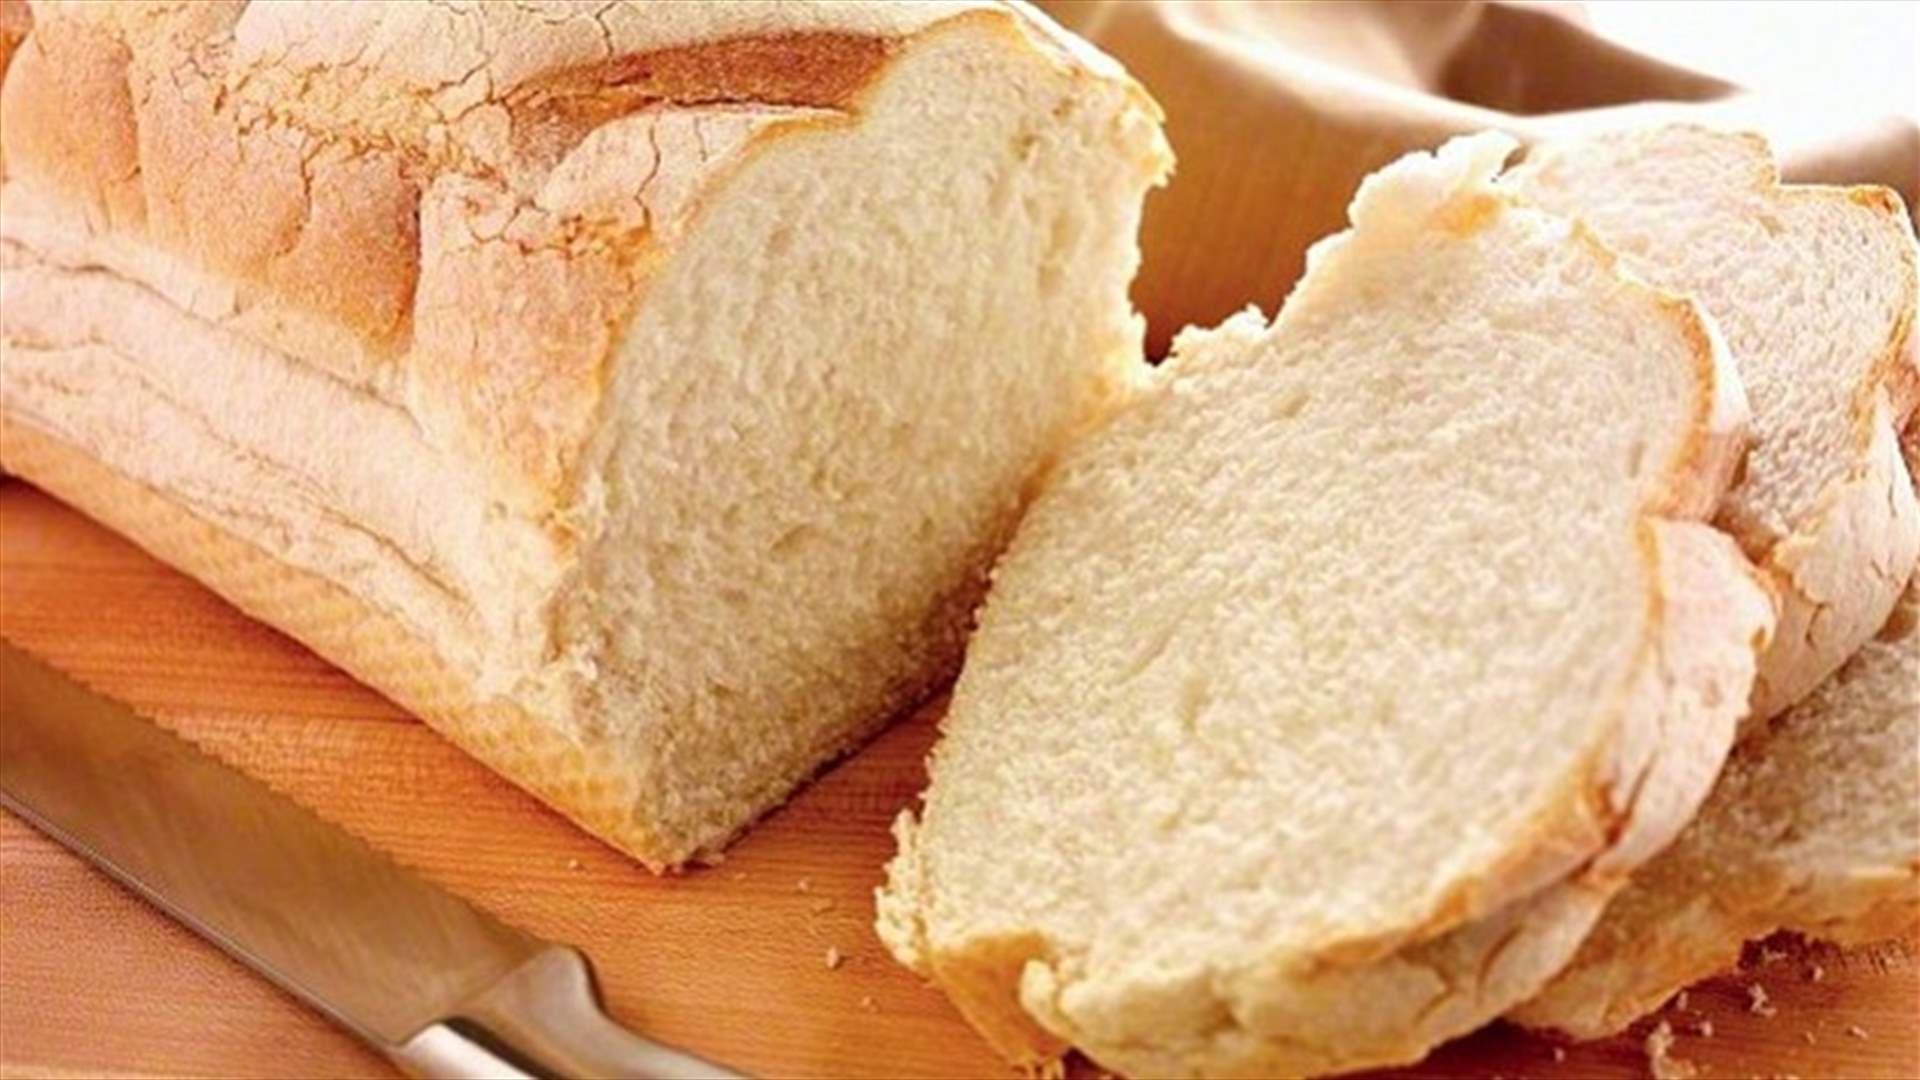 مادّة في الخبز الأبيض والأرّز تسبب سرطان الرئة